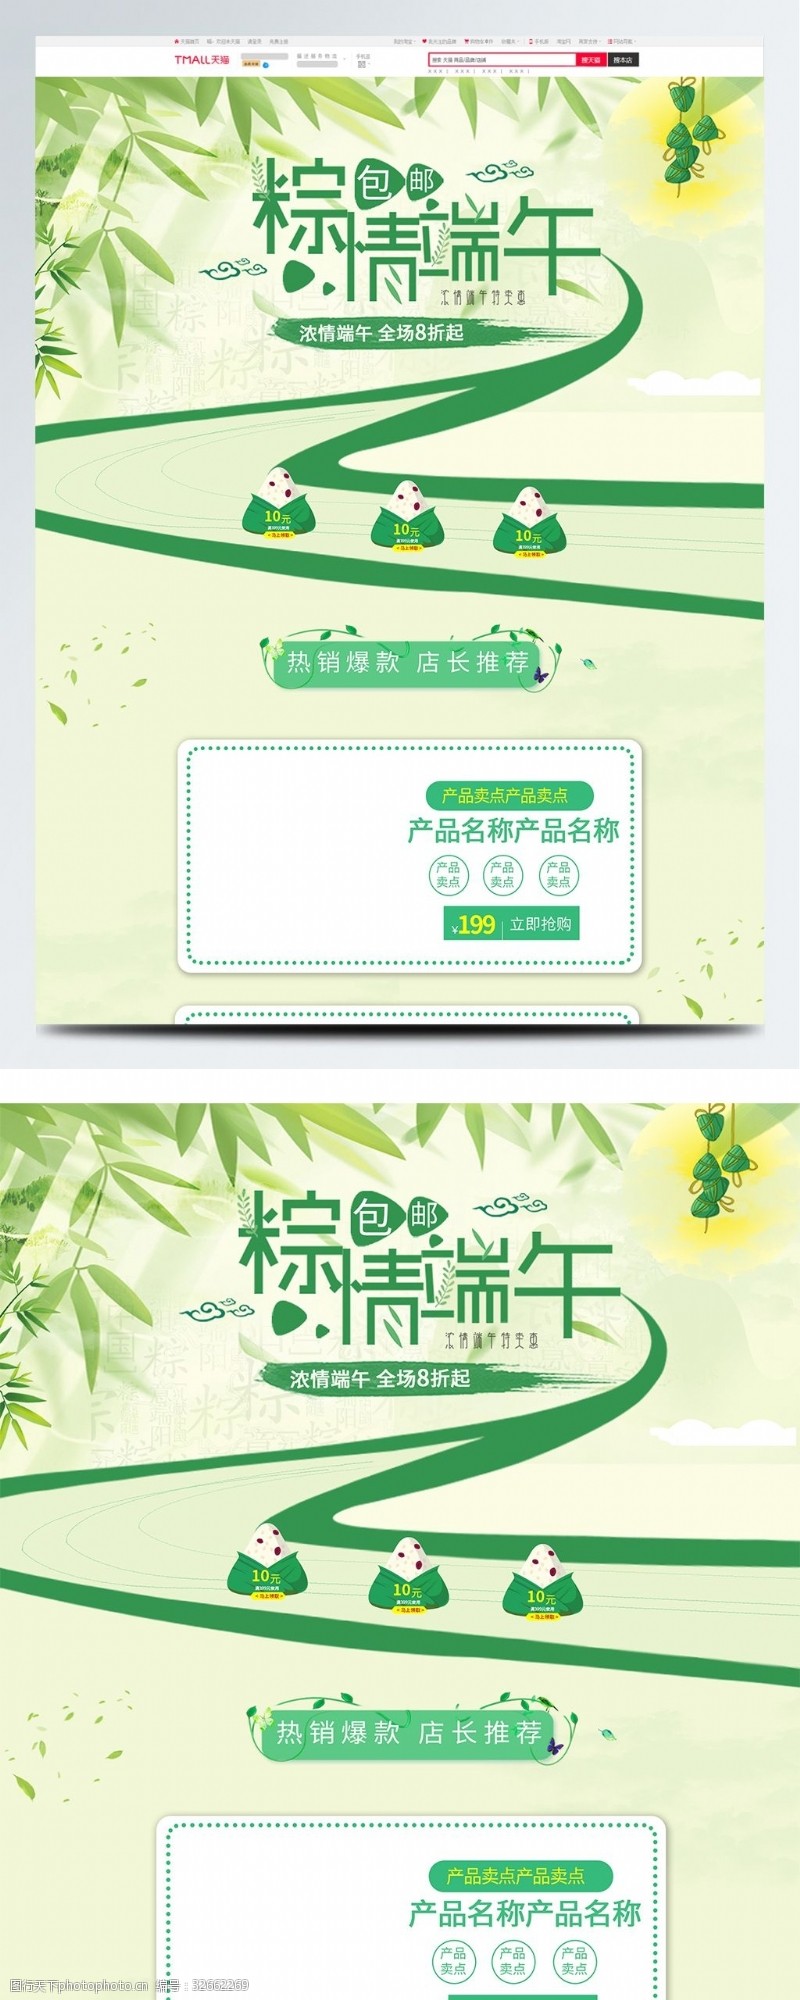 全场商品5折绿色中国风电商促销天猫端午节首页促销模板